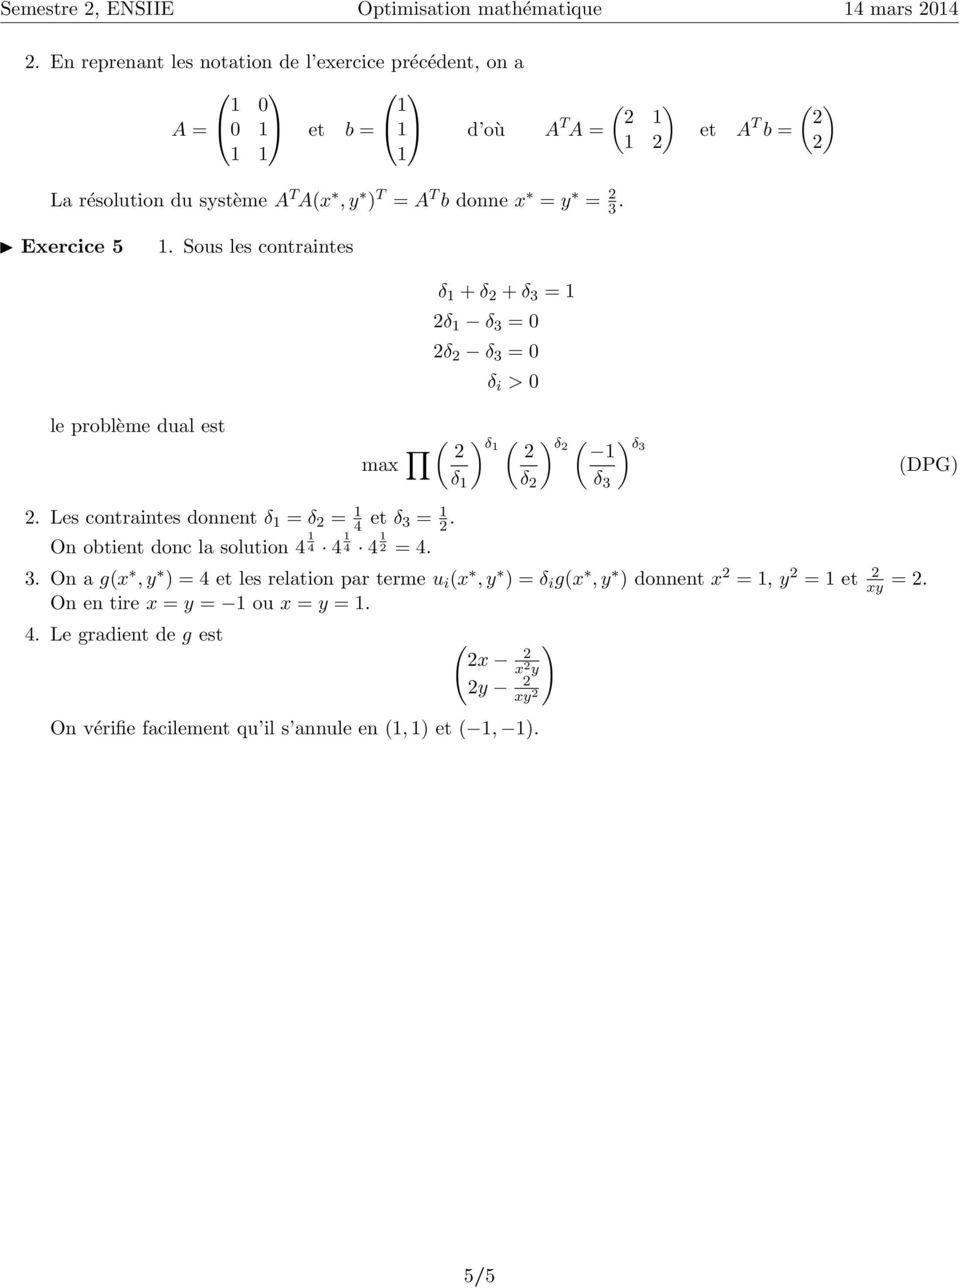 Exercice 5. Sous les contraintes δ + δ + δ 3 = δ δ 3 = 0 δ δ 3 = 0 δ i > 0 le problème dual est max ) δ ) δ ) δ3 DPG) δ δ δ 3.